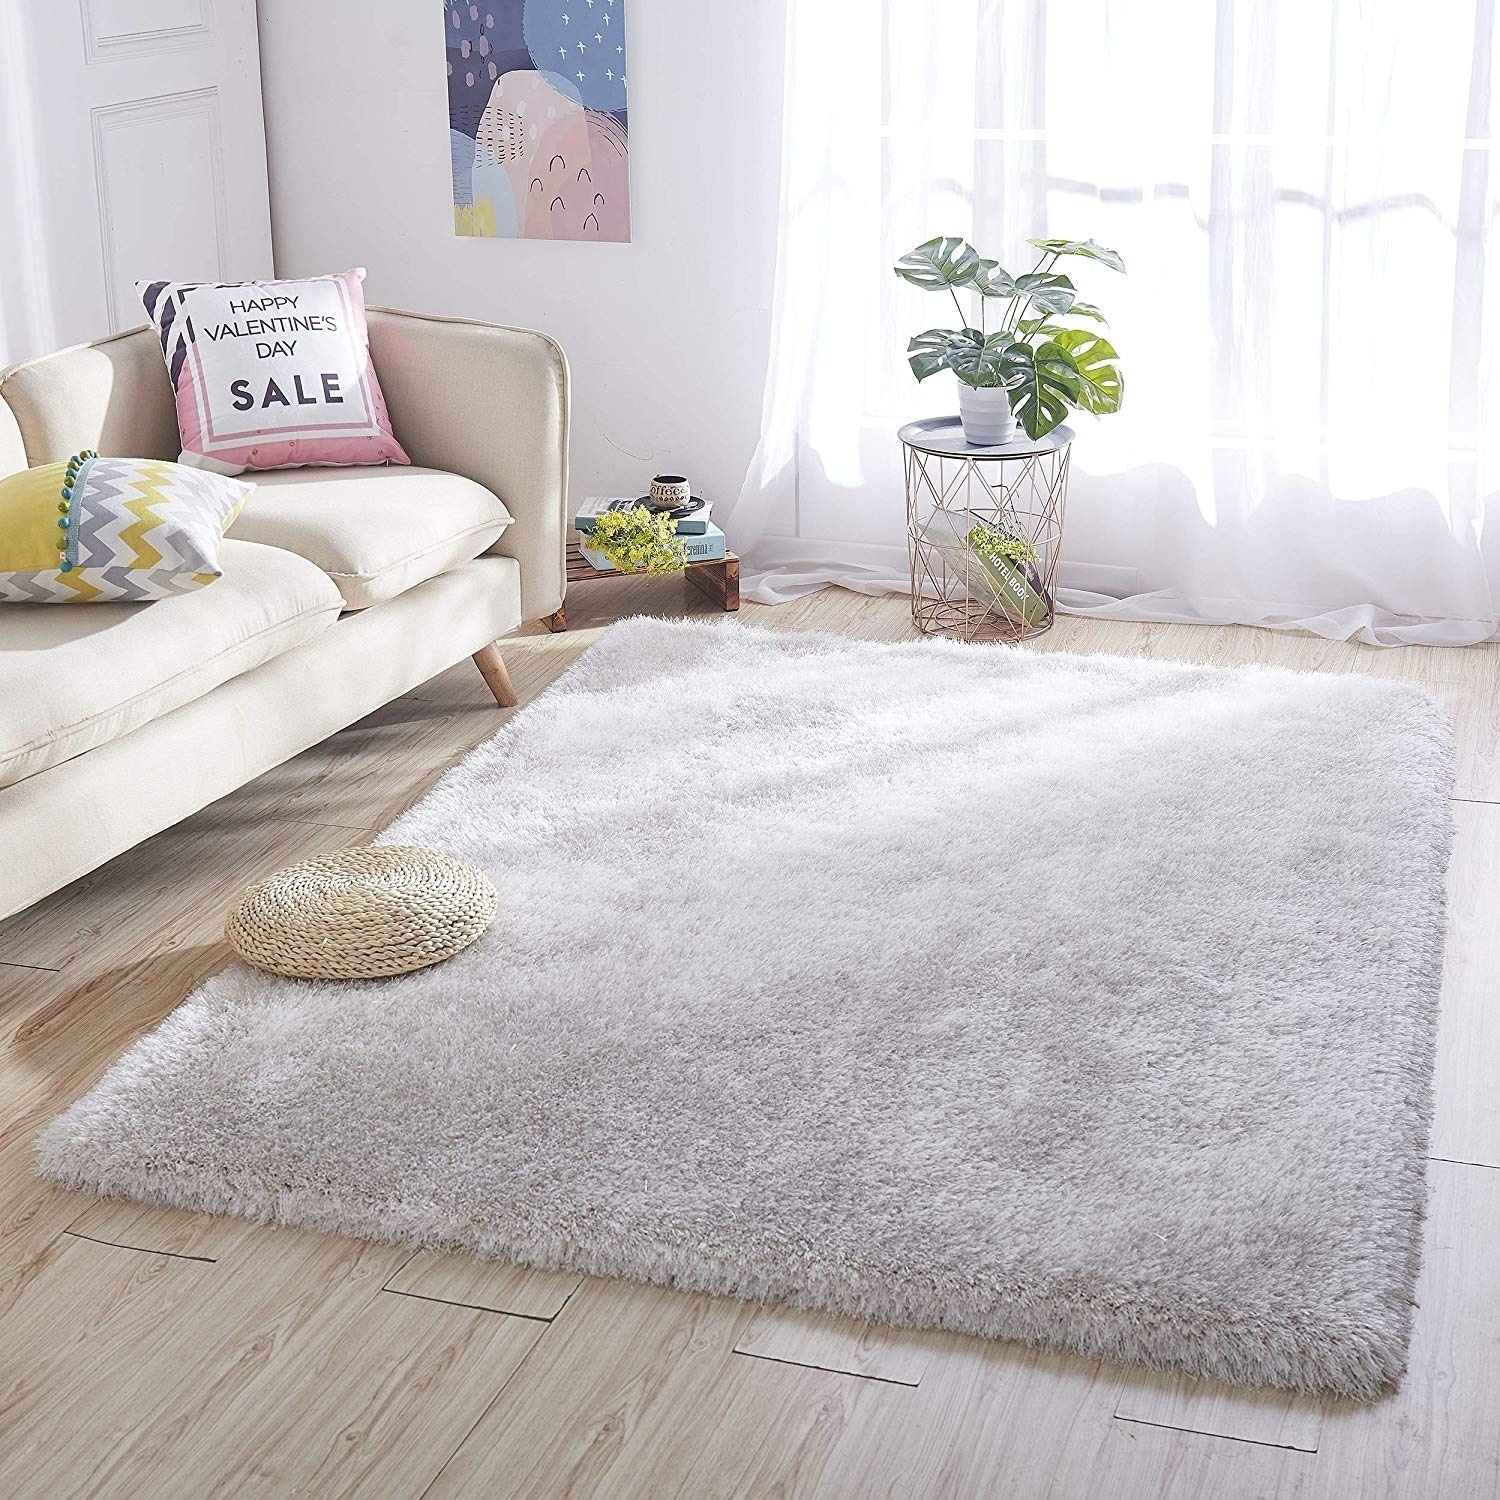 Large Shaggy Floor Rugs Carpet Plain Soft Area Mat 5cm Thick Pile Home Decor 